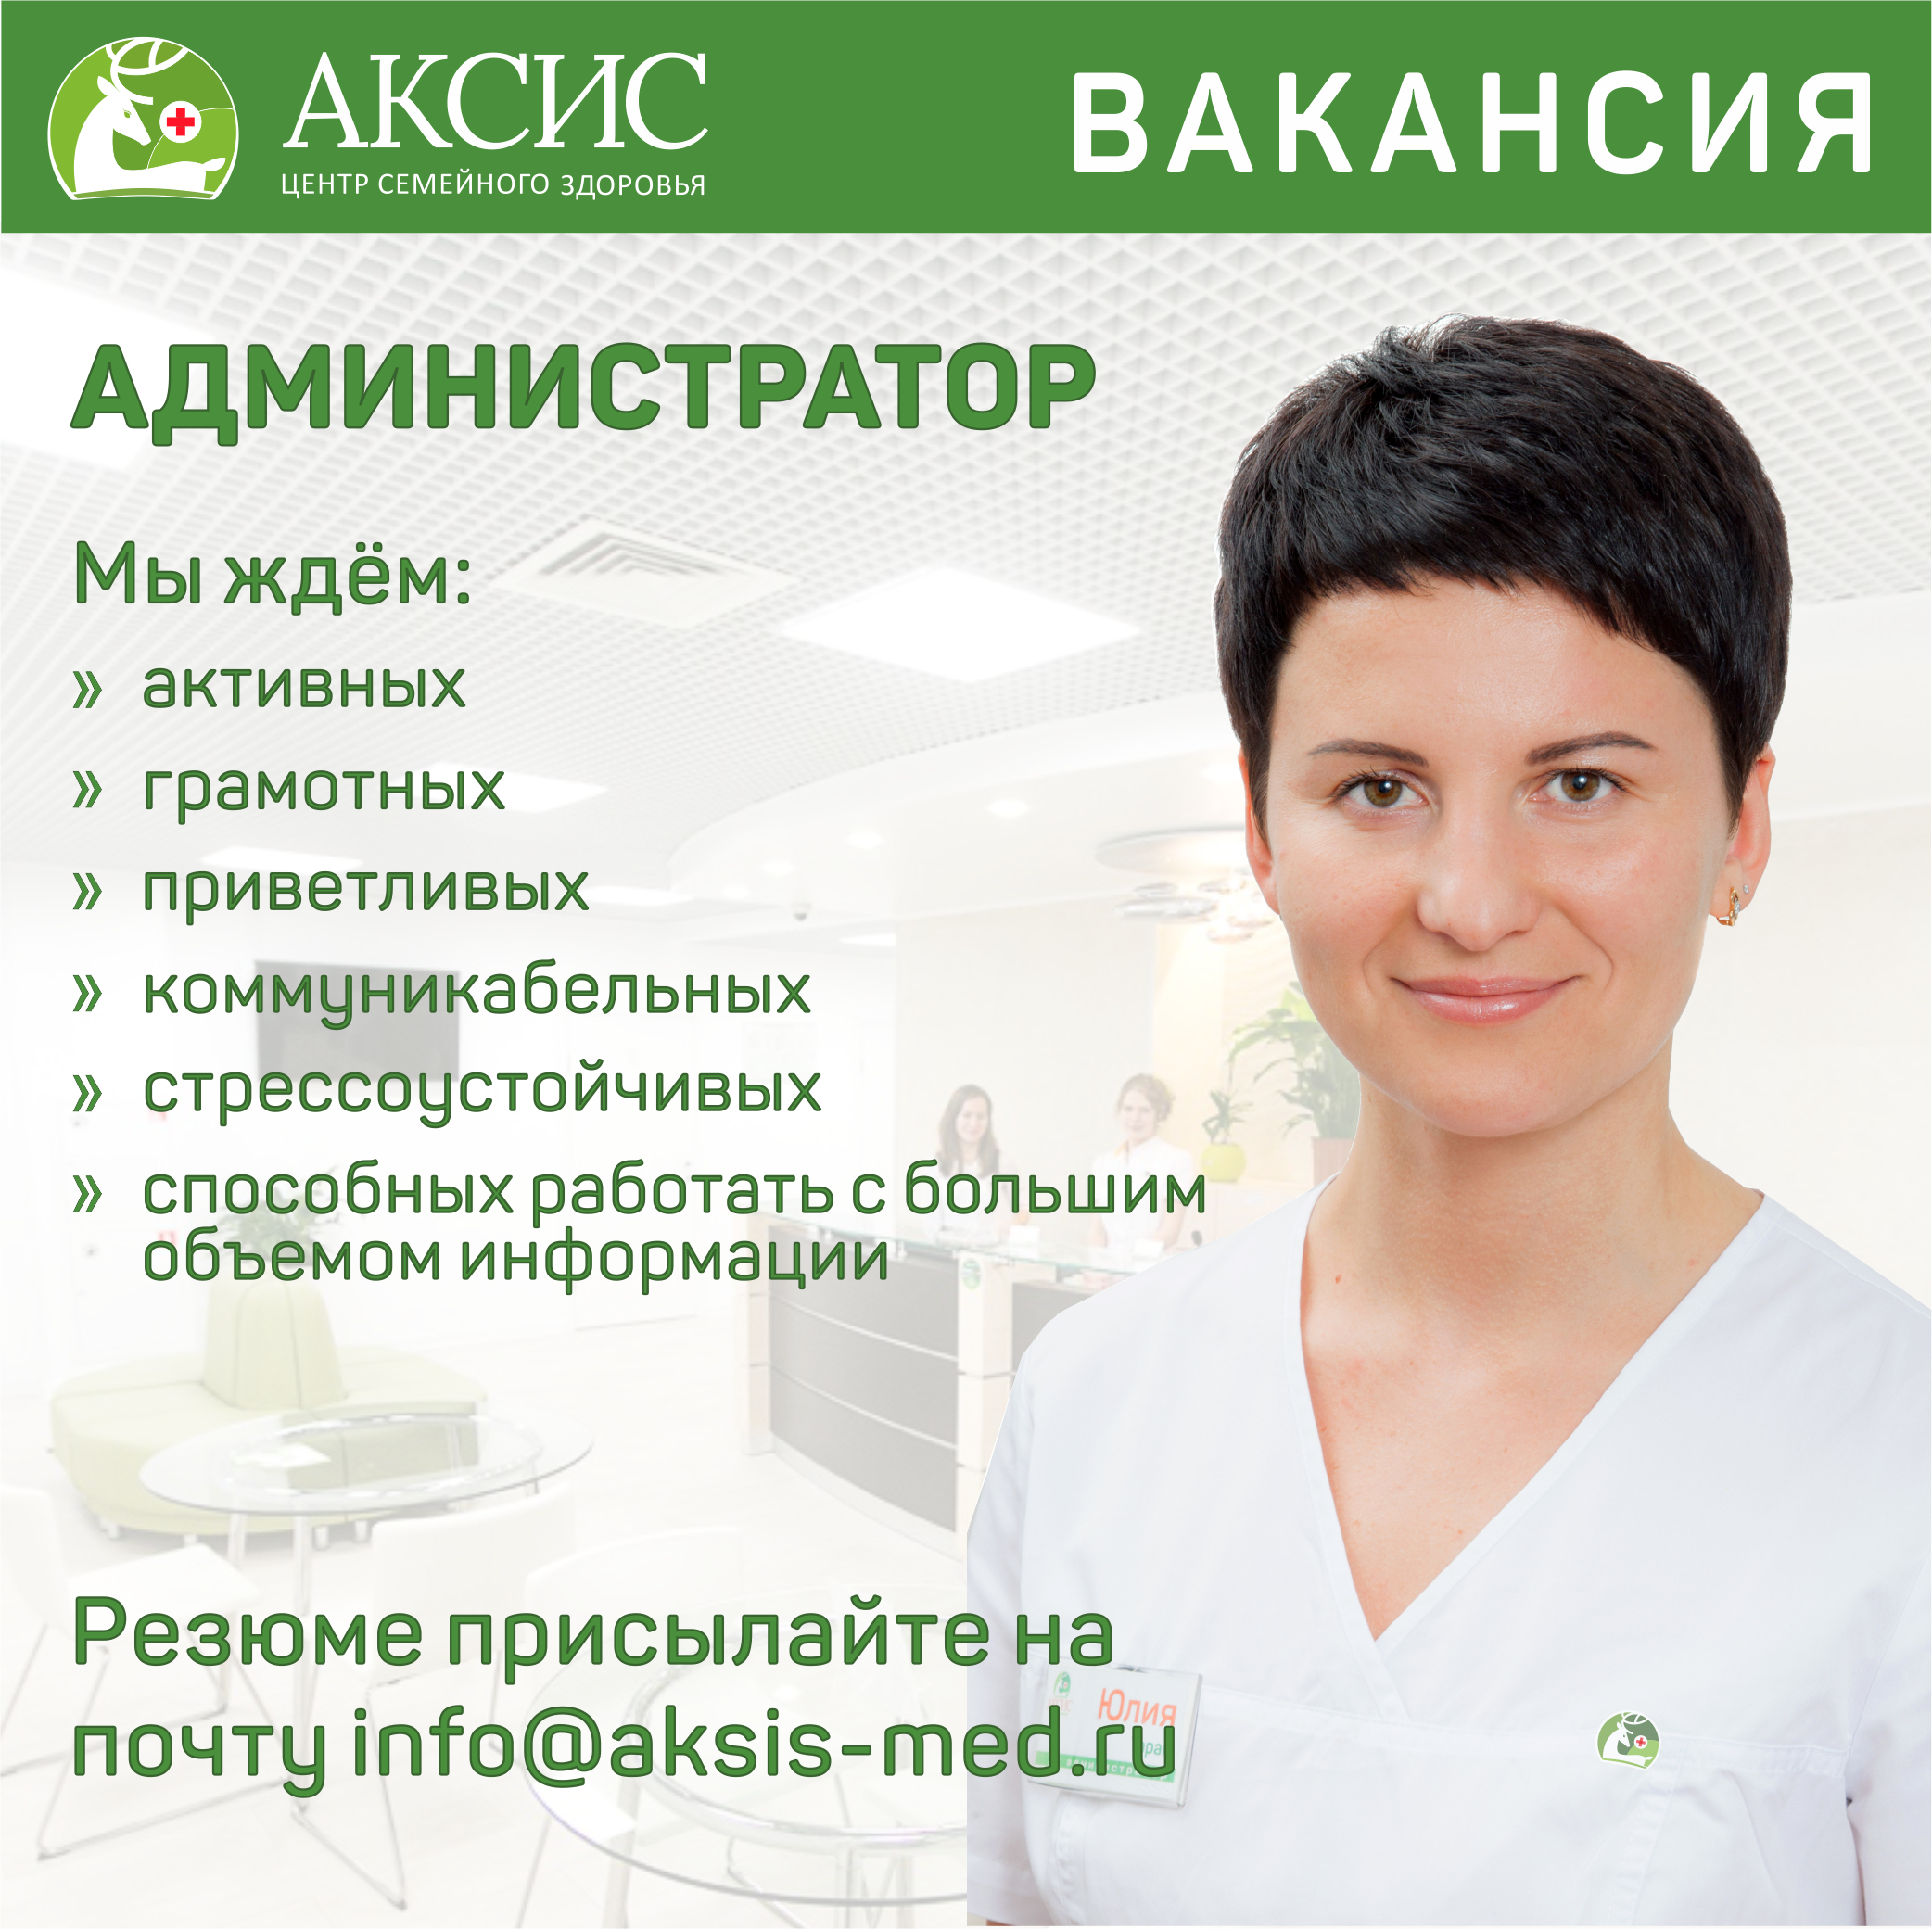 Работа медицинским администратором в Минске